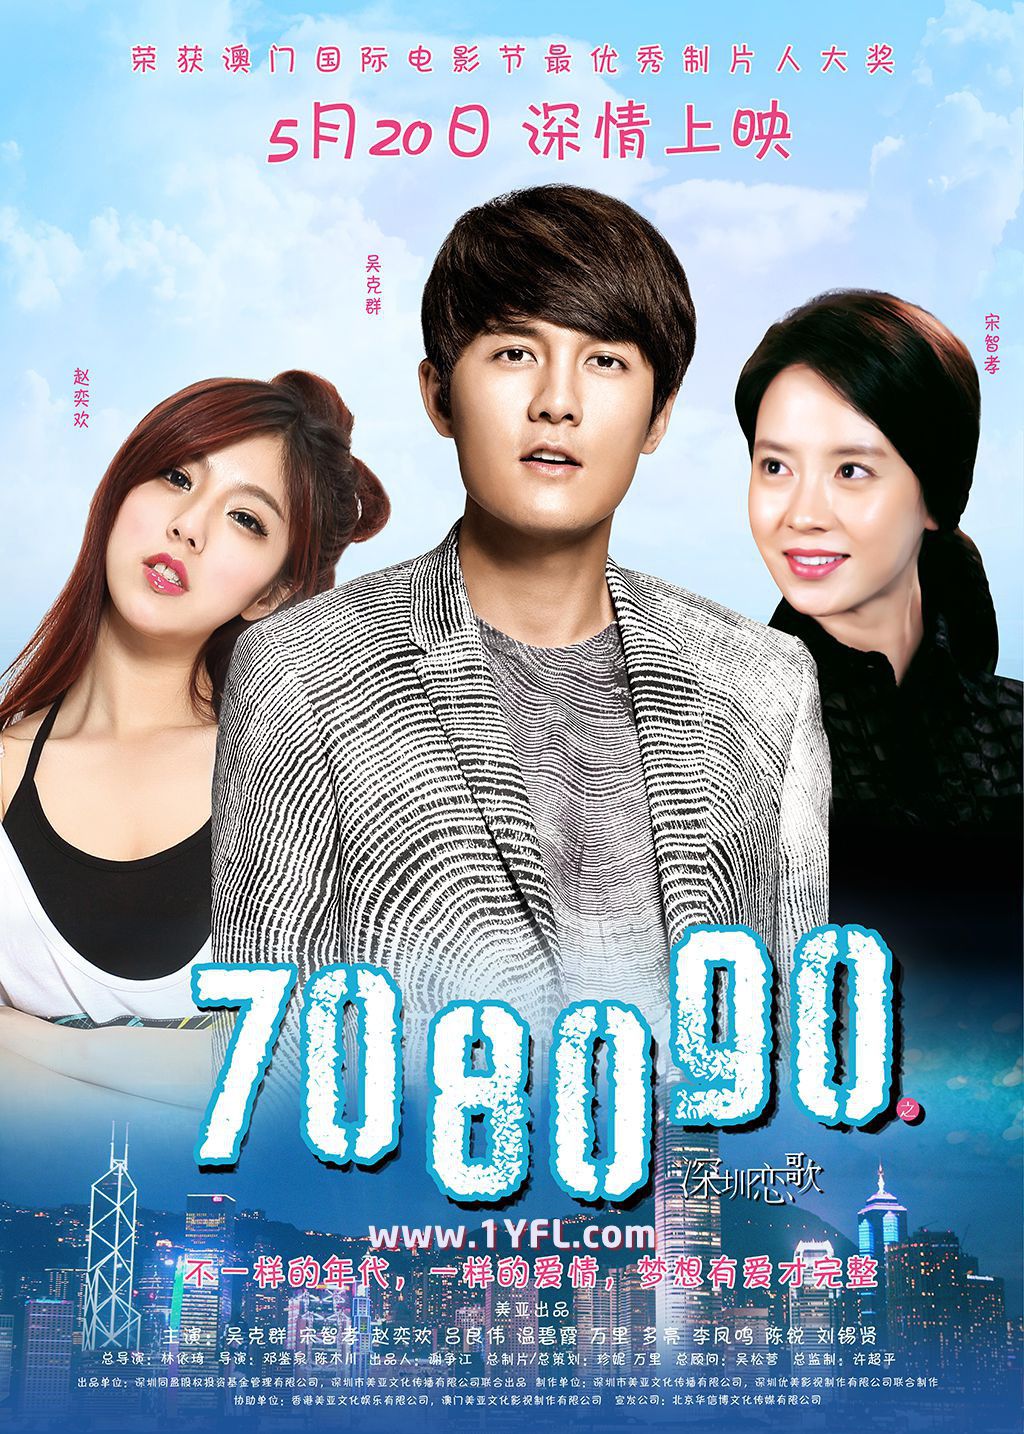 Clip 2'39 của Song Ji Hyo trong "708090" hút gần 17 triệu view trên Youtube (1)